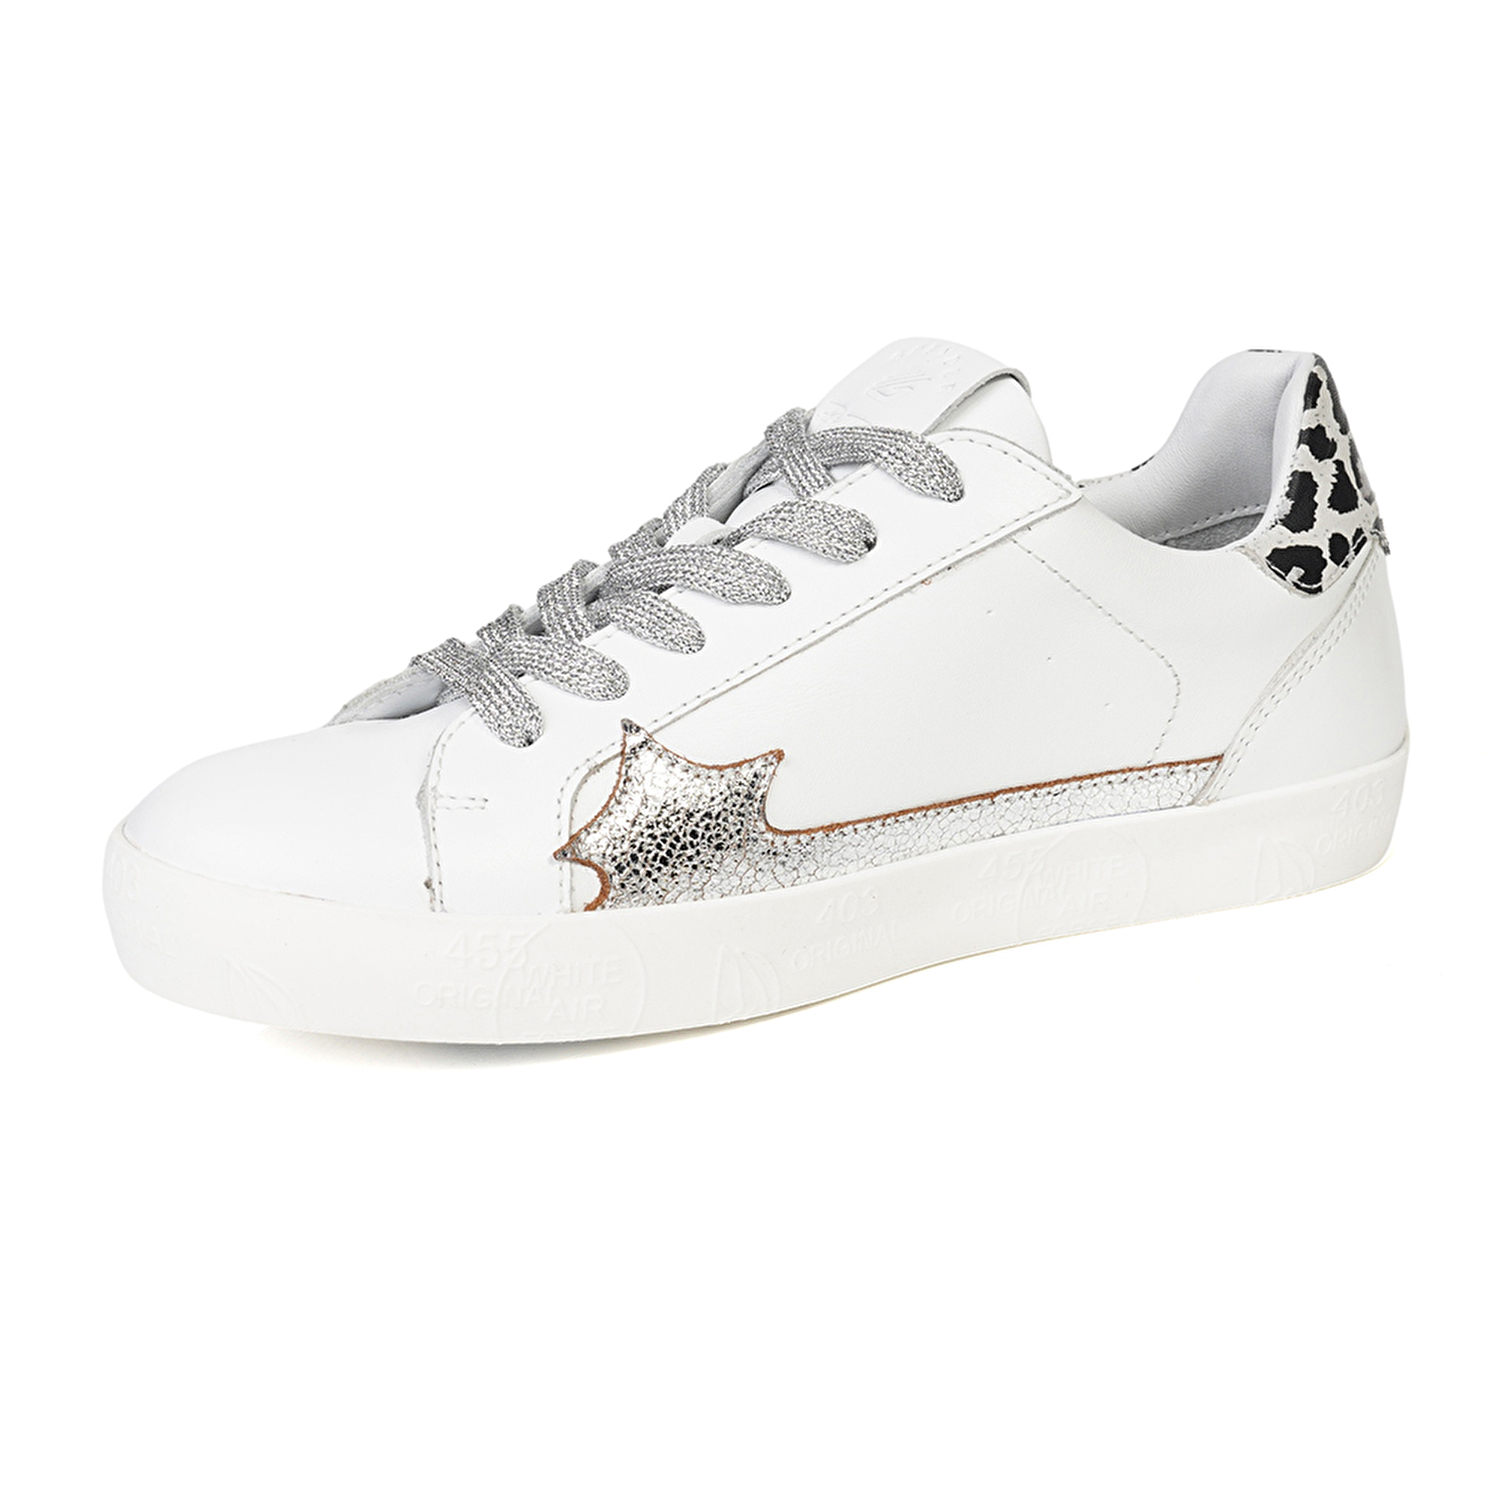 Kadın Beyaz Gümüş Hakiki Deri Sneaker Ayakkabı 4Y2SA33370-2